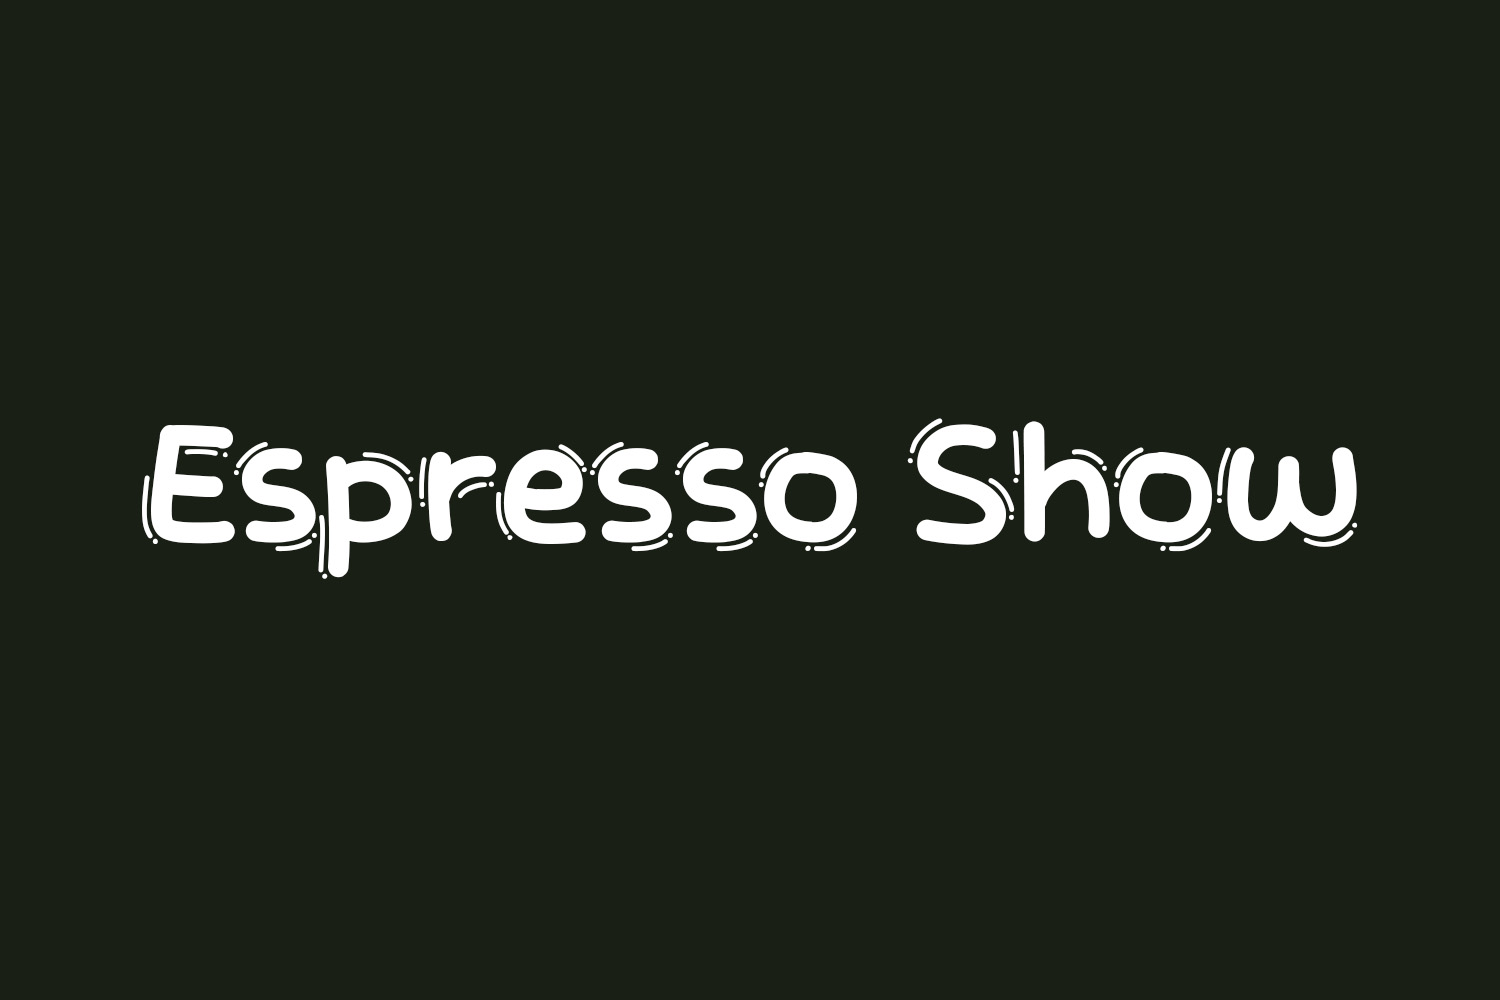 Espresso Show Free Font